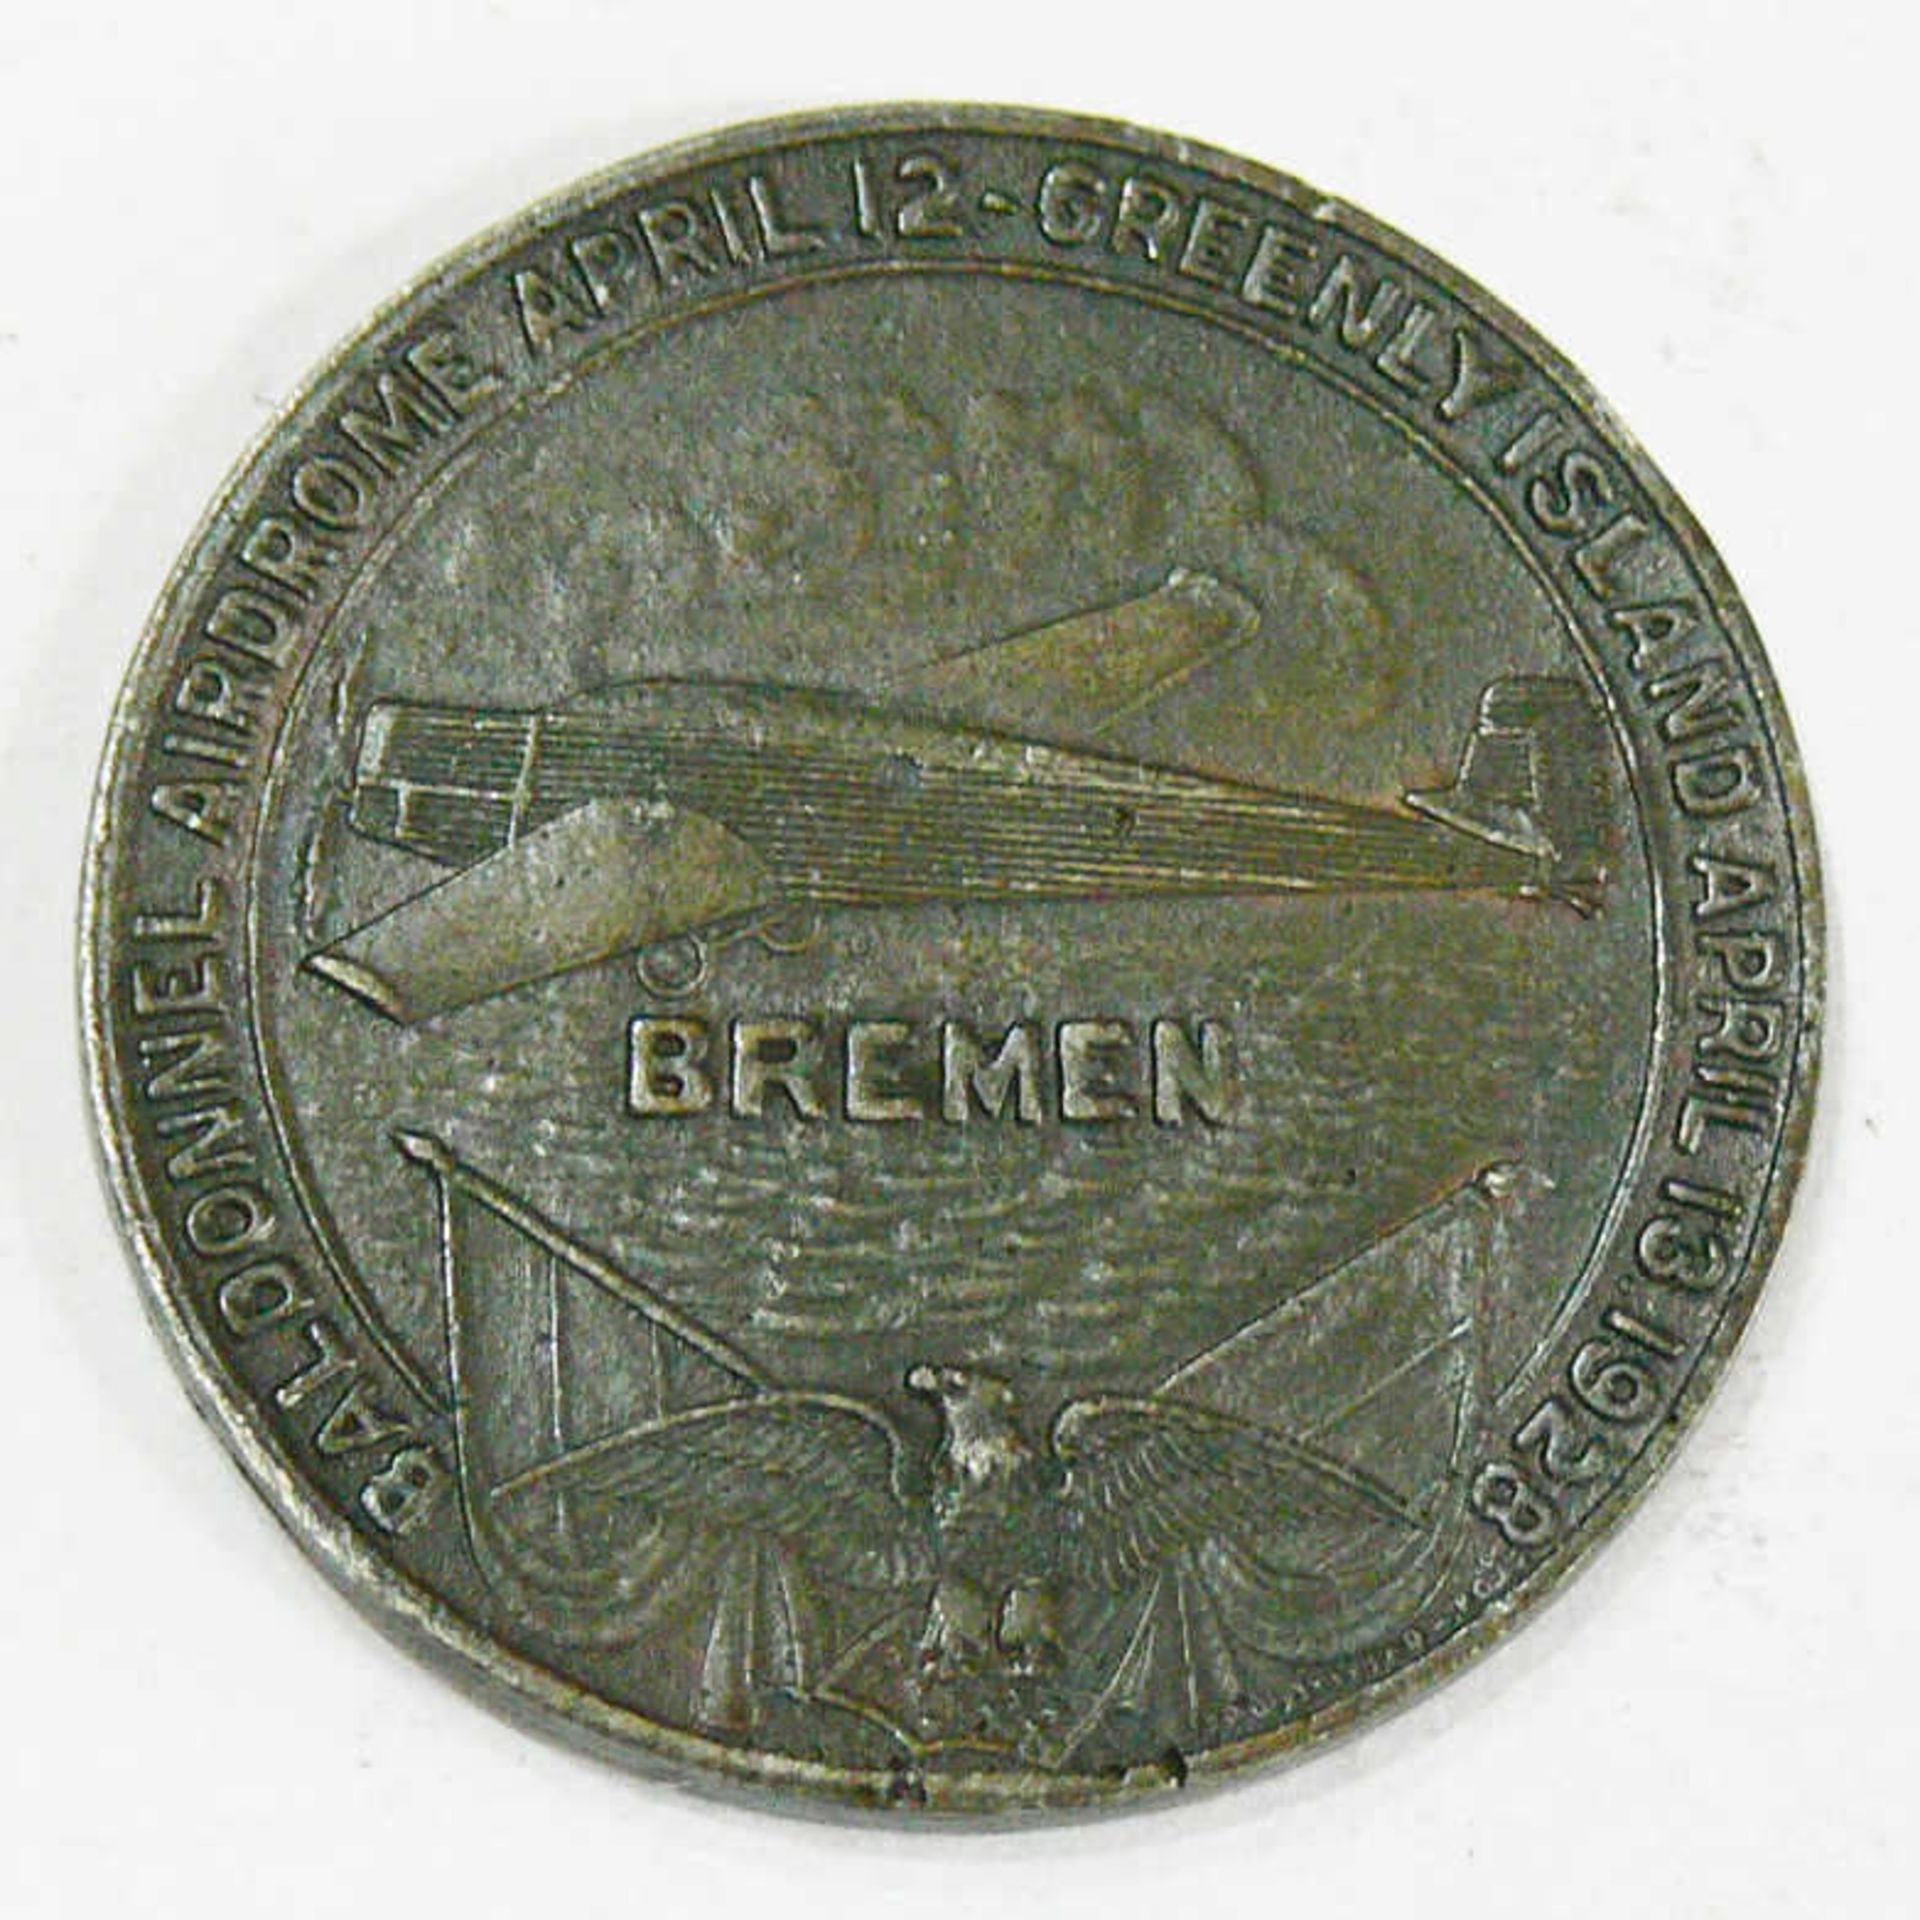 Luftfahrt - Medaille, erster Ost-West - Transatlantik - Flug der Bremen. Durchmesser: ca. 32 mm. - Bild 2 aus 2